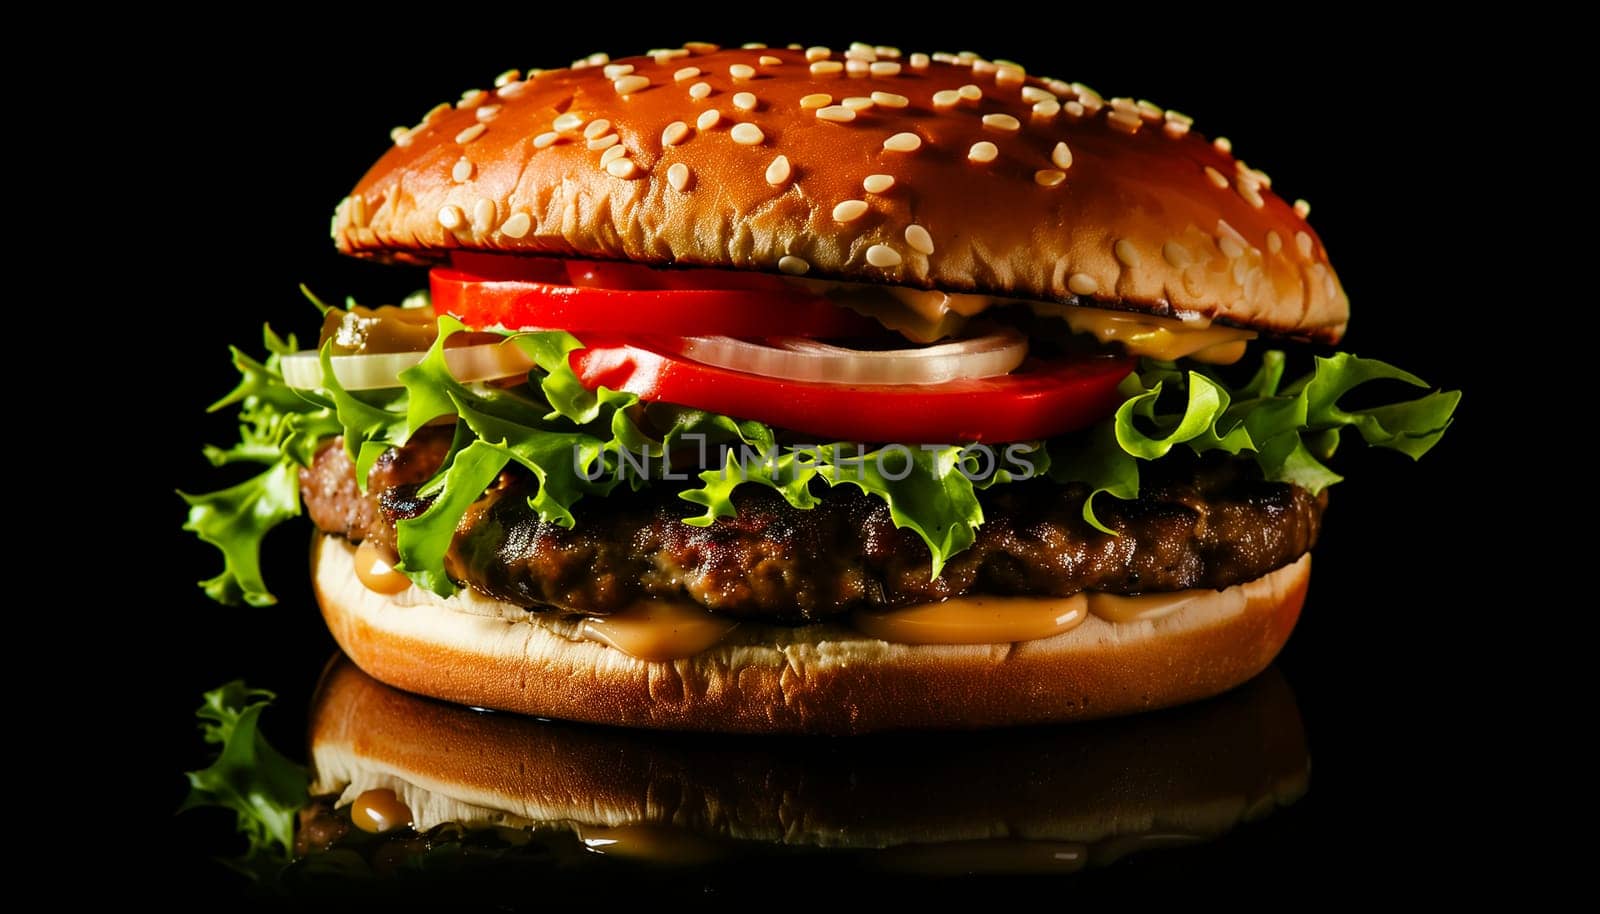 Fresh tasty burger on black background. Shallow dof. by sarymsakov